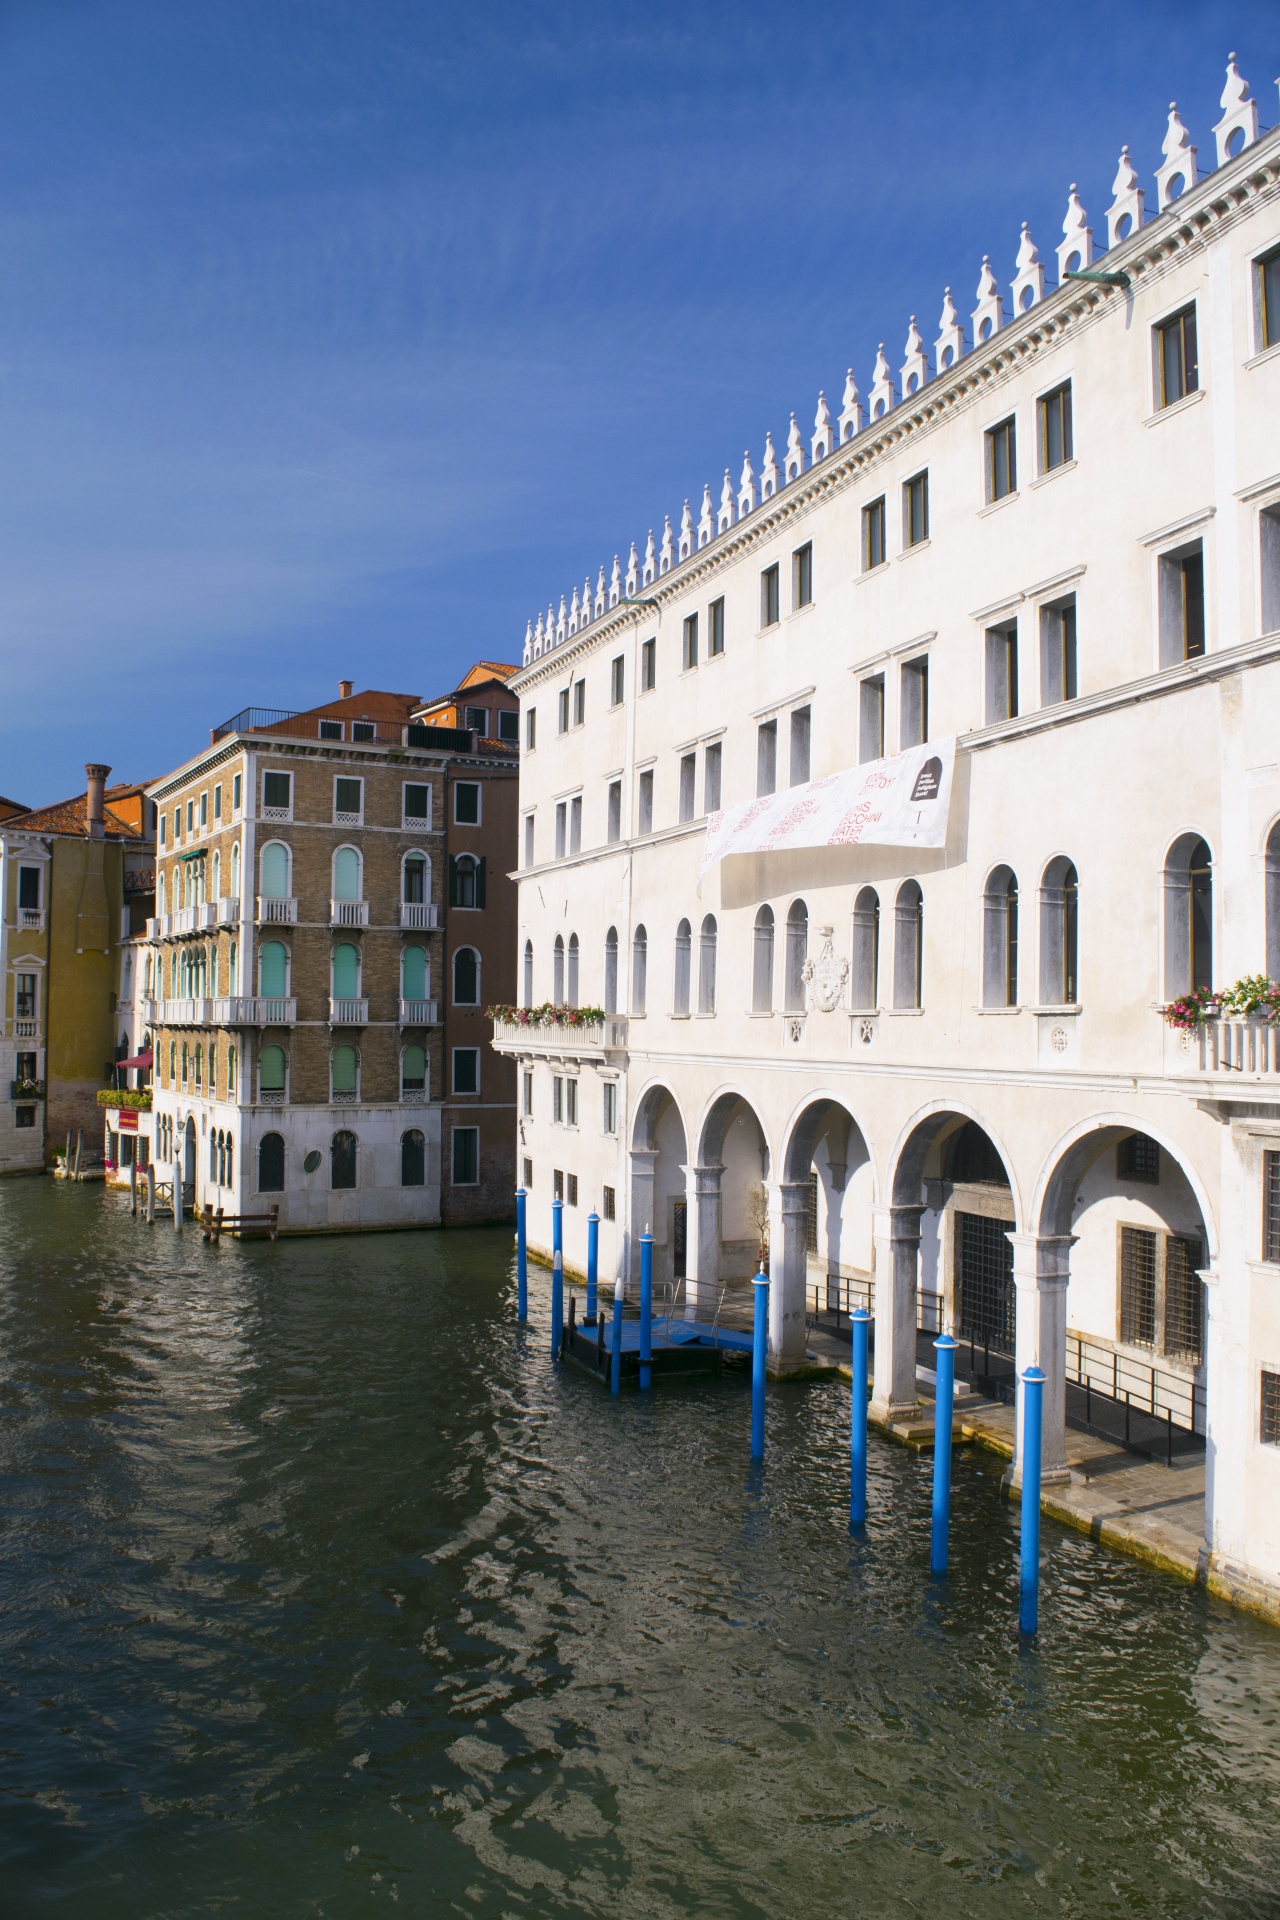 Venice Image 1173